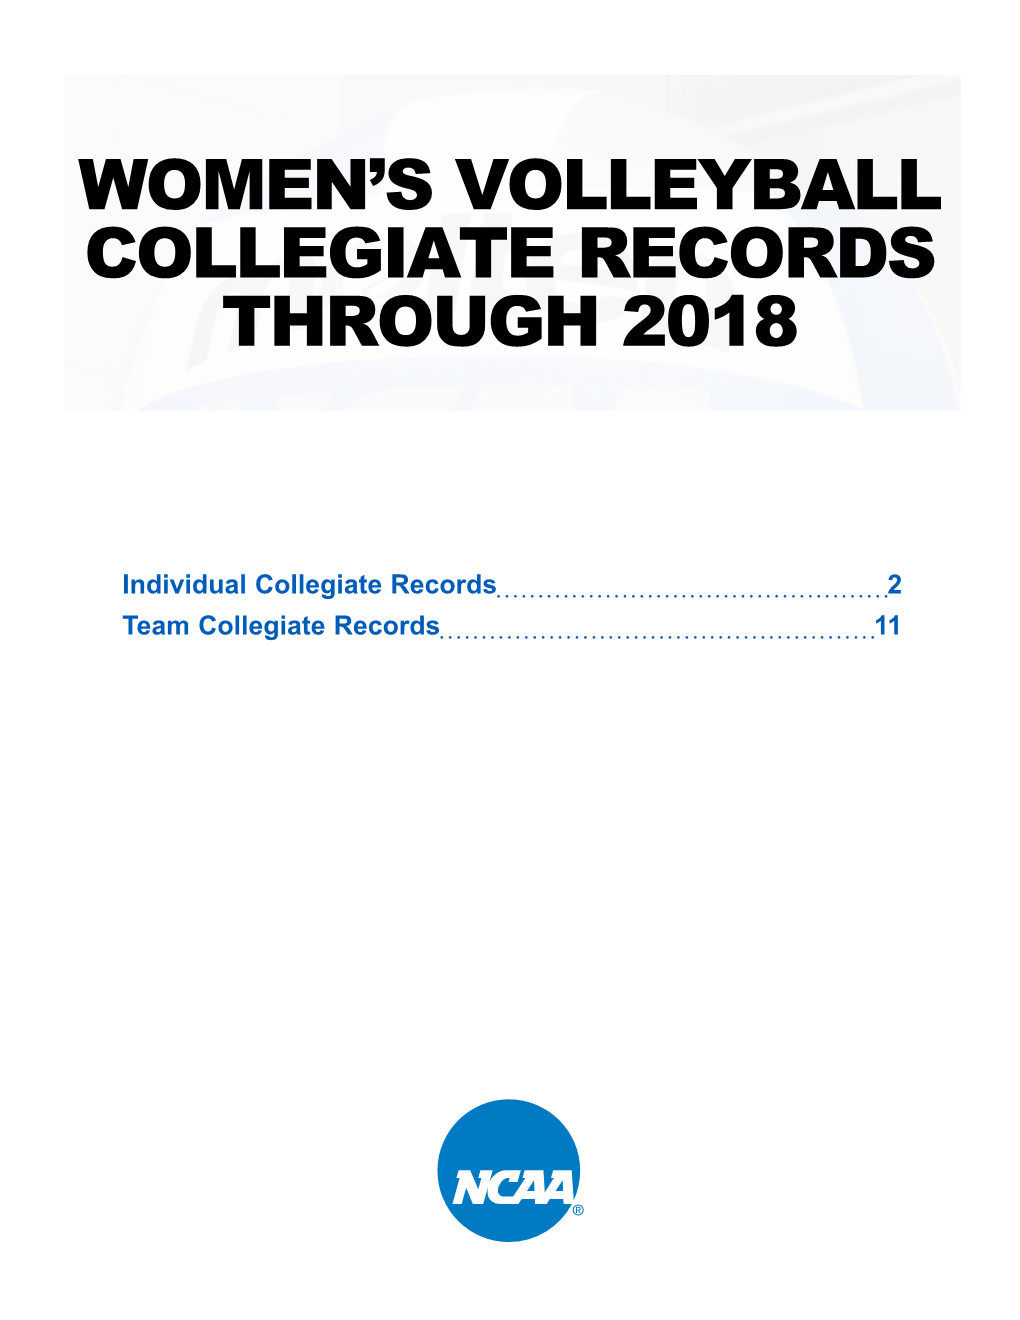 Women's Volleyball Collegiate Records